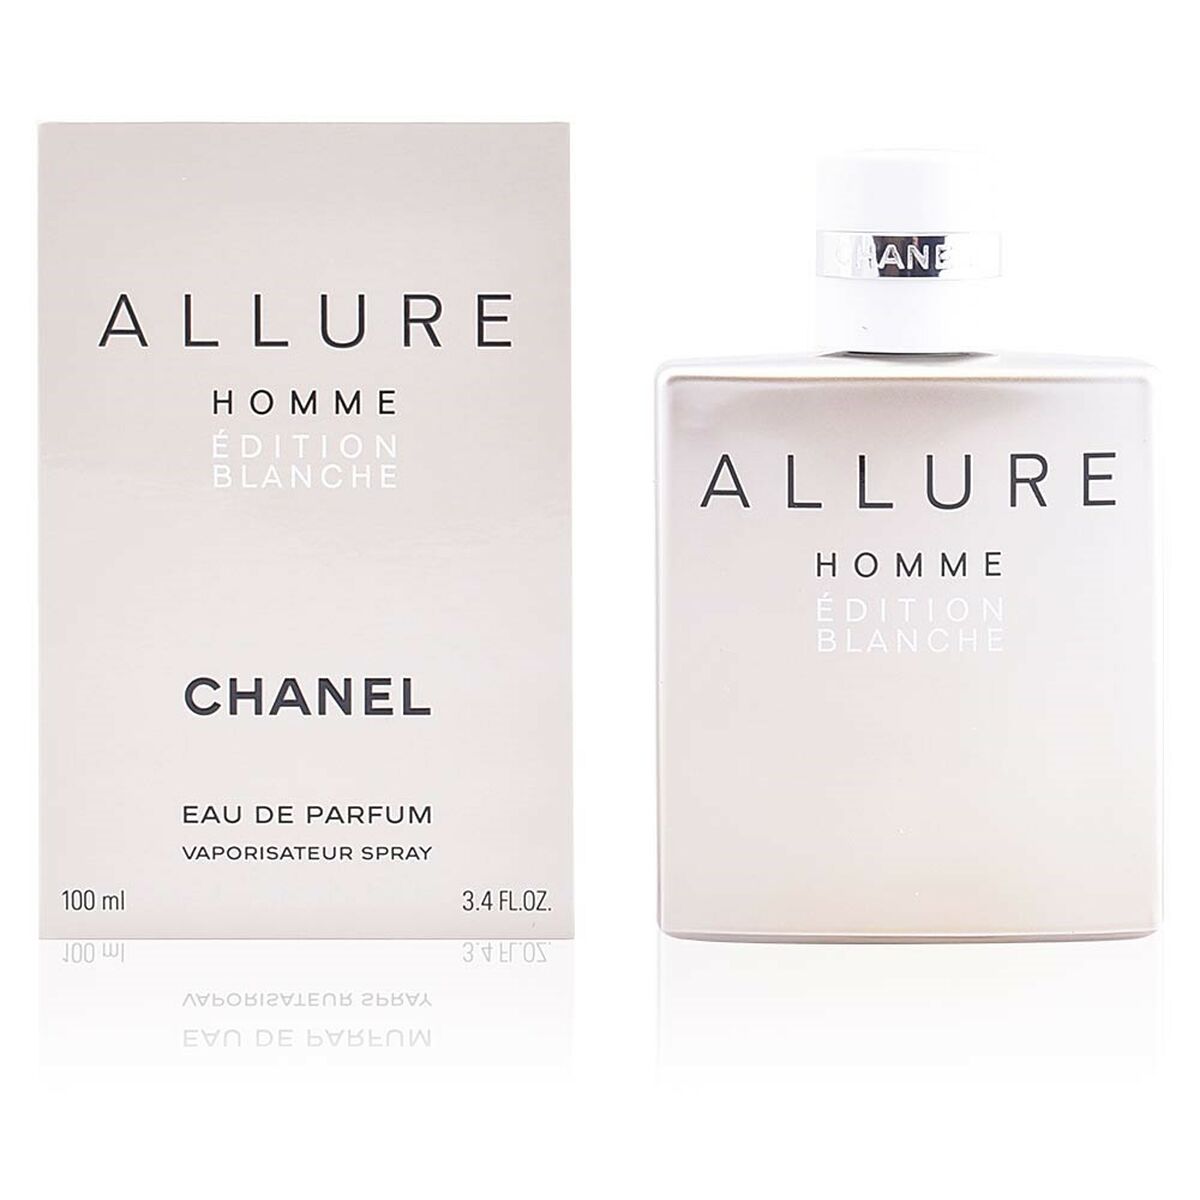 Kaufe Allure Homme Edition Blanche Chanel EDP - Herren bei AWK Flagship um € 123.00